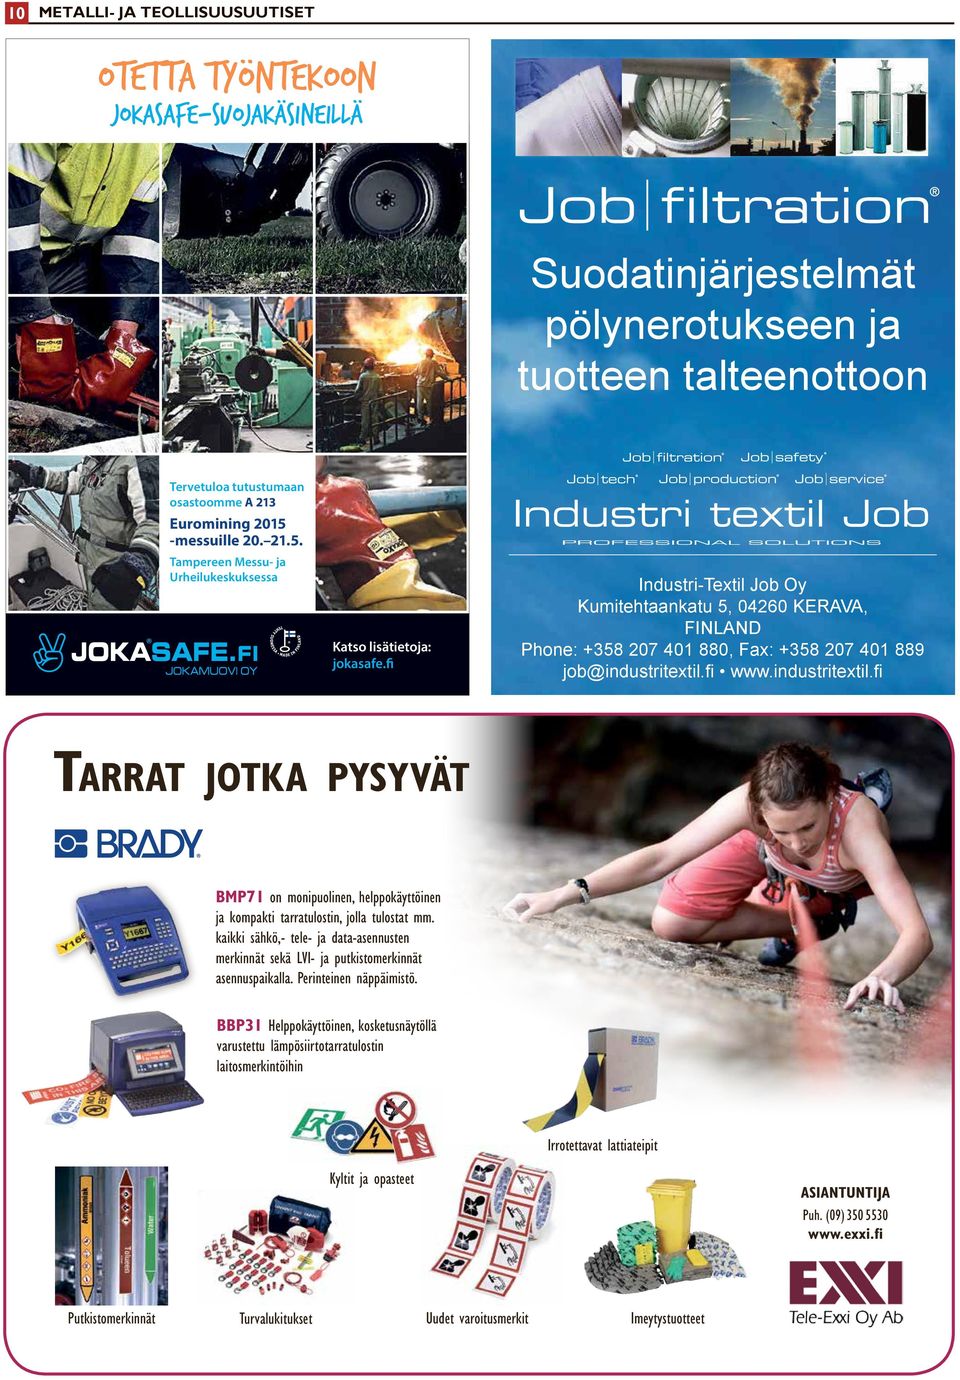 fi Industri-Textil Job Oy Kumitehtaankatu 5, 04260 KERAVA, FINLAND Phone: +358 207 401 880, Fax: +358 207 401 889 job@industritextil.